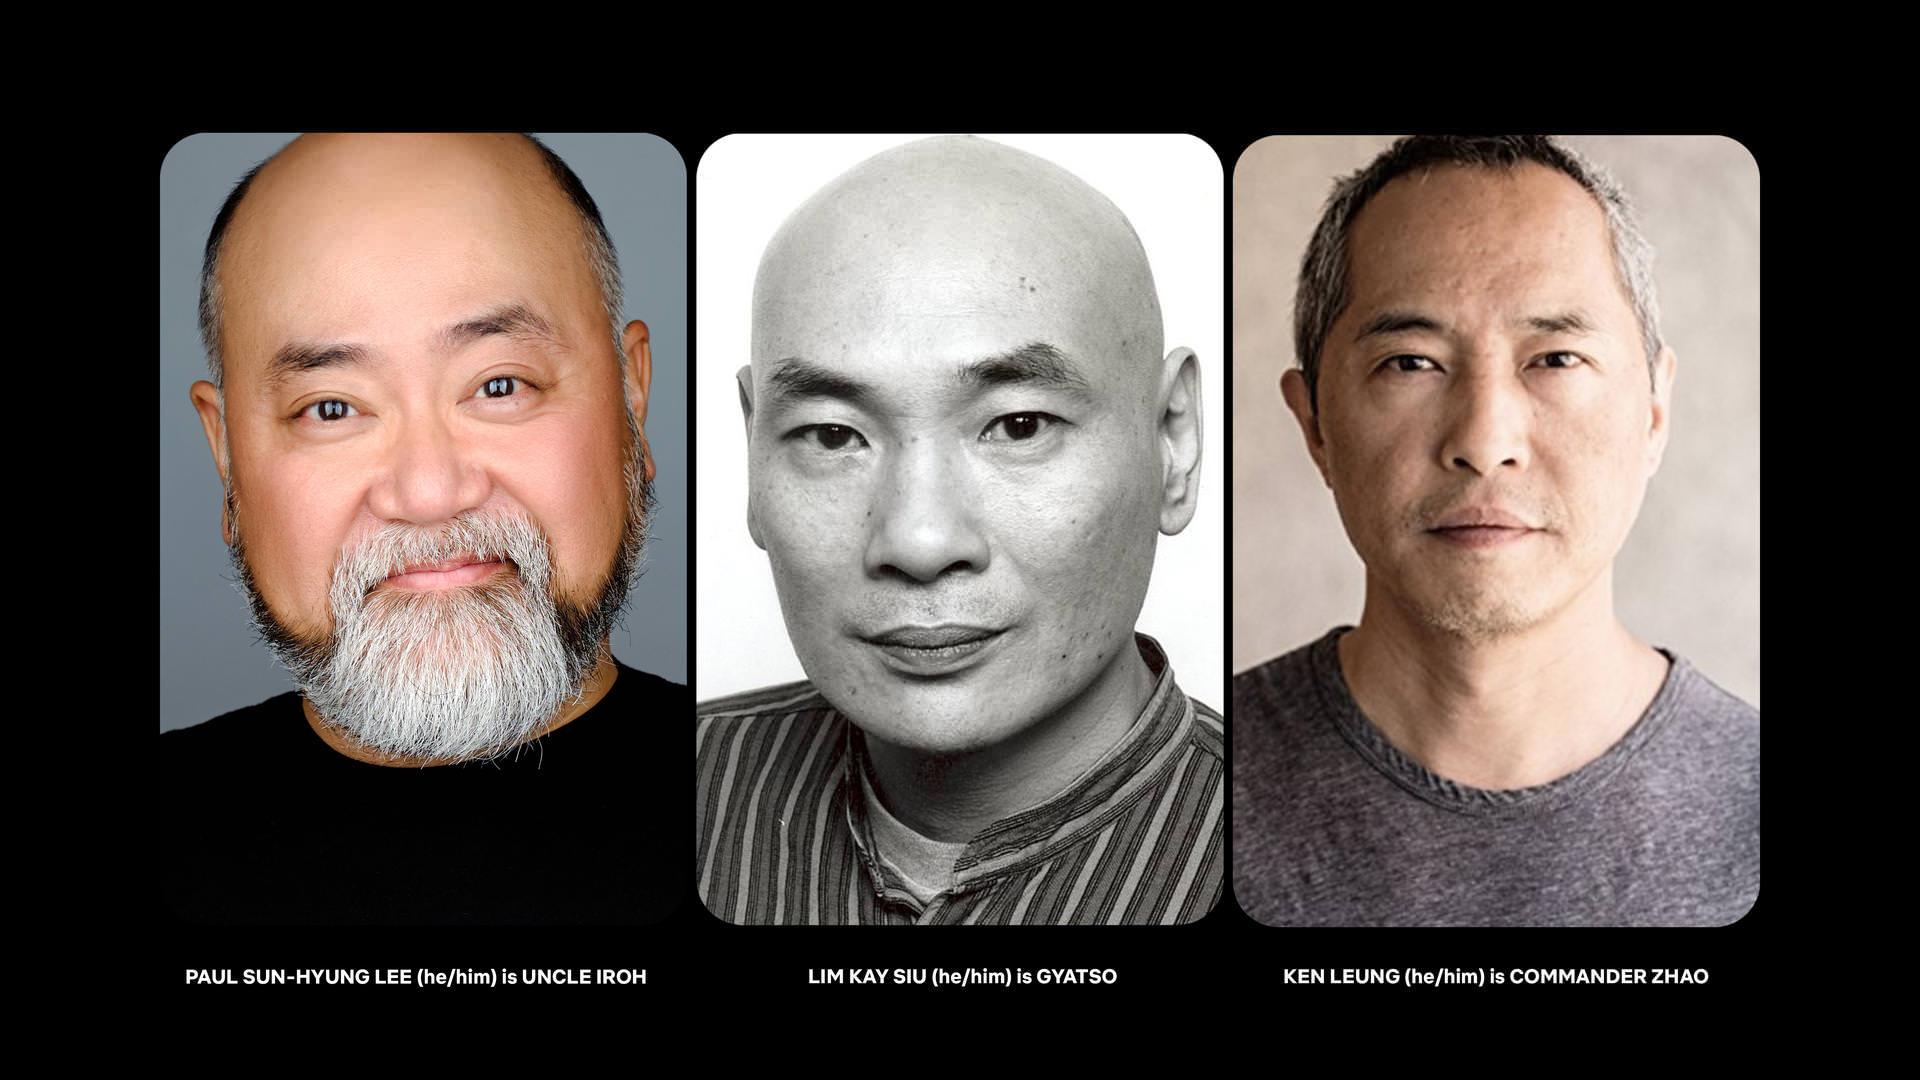 پل سان هيونگ لی در نقش عمو Iroh، لیم کی سیو در نقش گیاتسو و کن لئونگ در نقش فرمانده ژائو، بازیگران جدید سریال Avatar: The Last Airbender